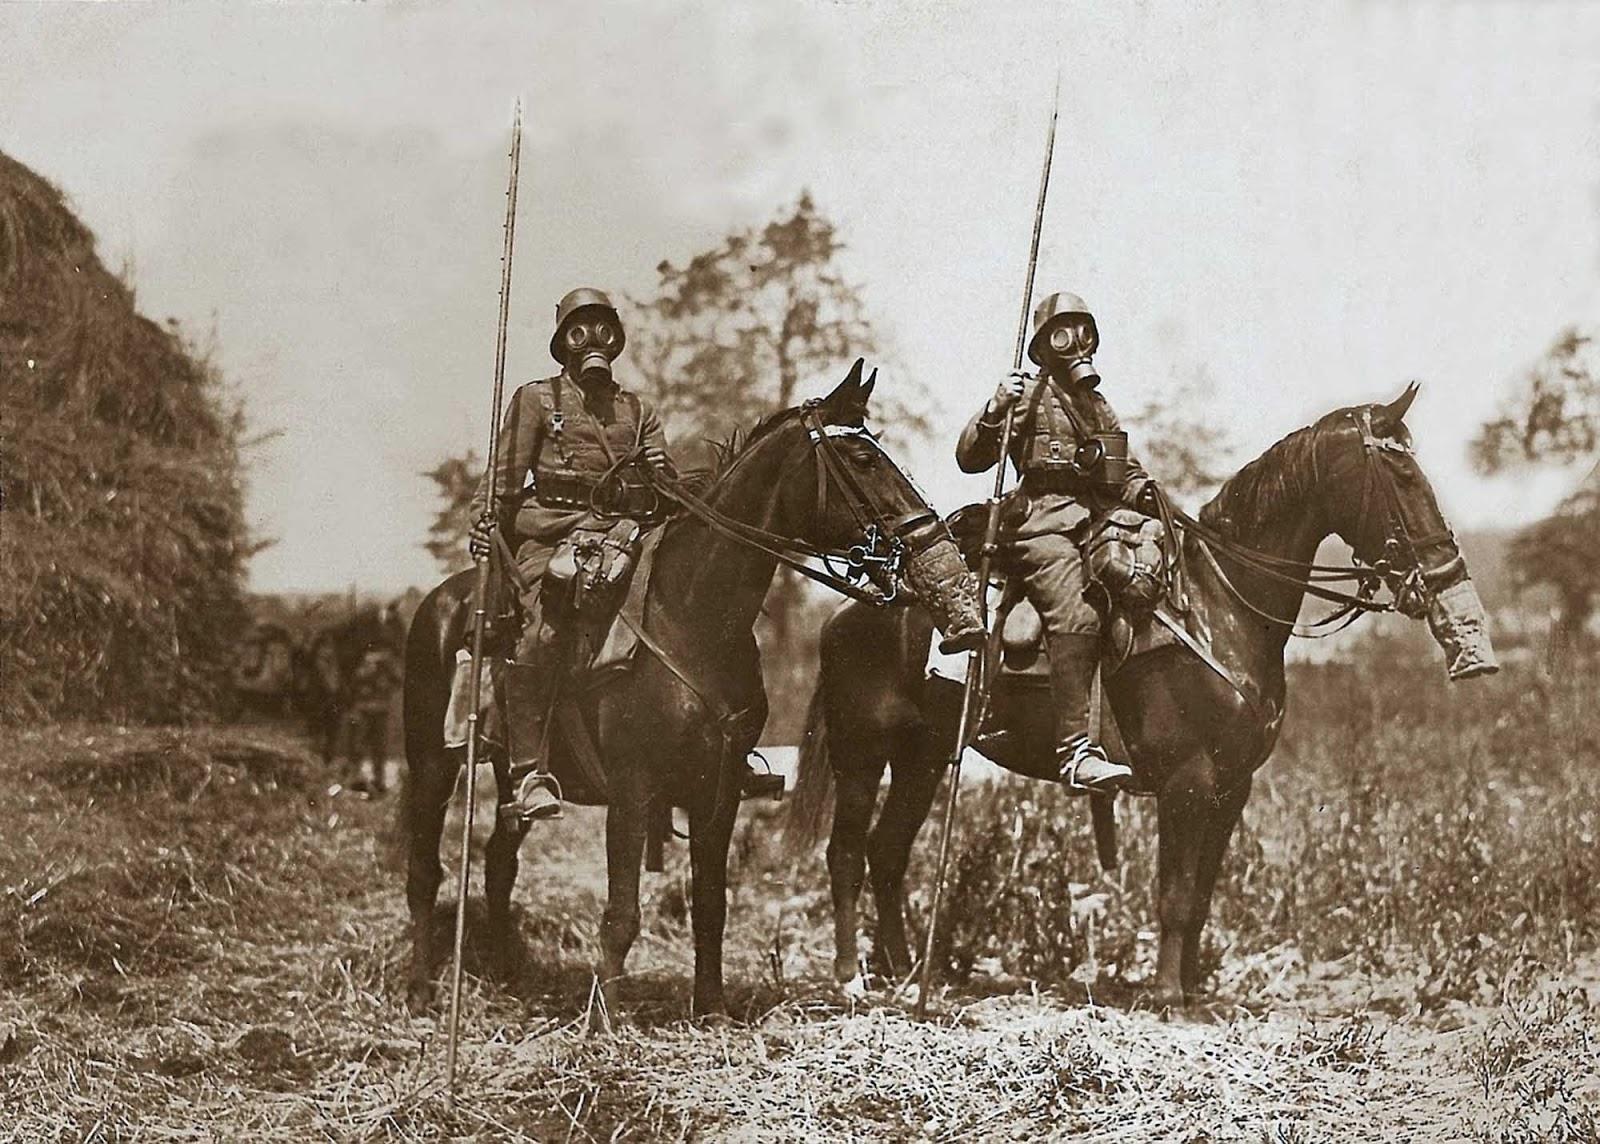 Patrouille de cavalerie allemande dans des masques à gaz et des lances, 1918